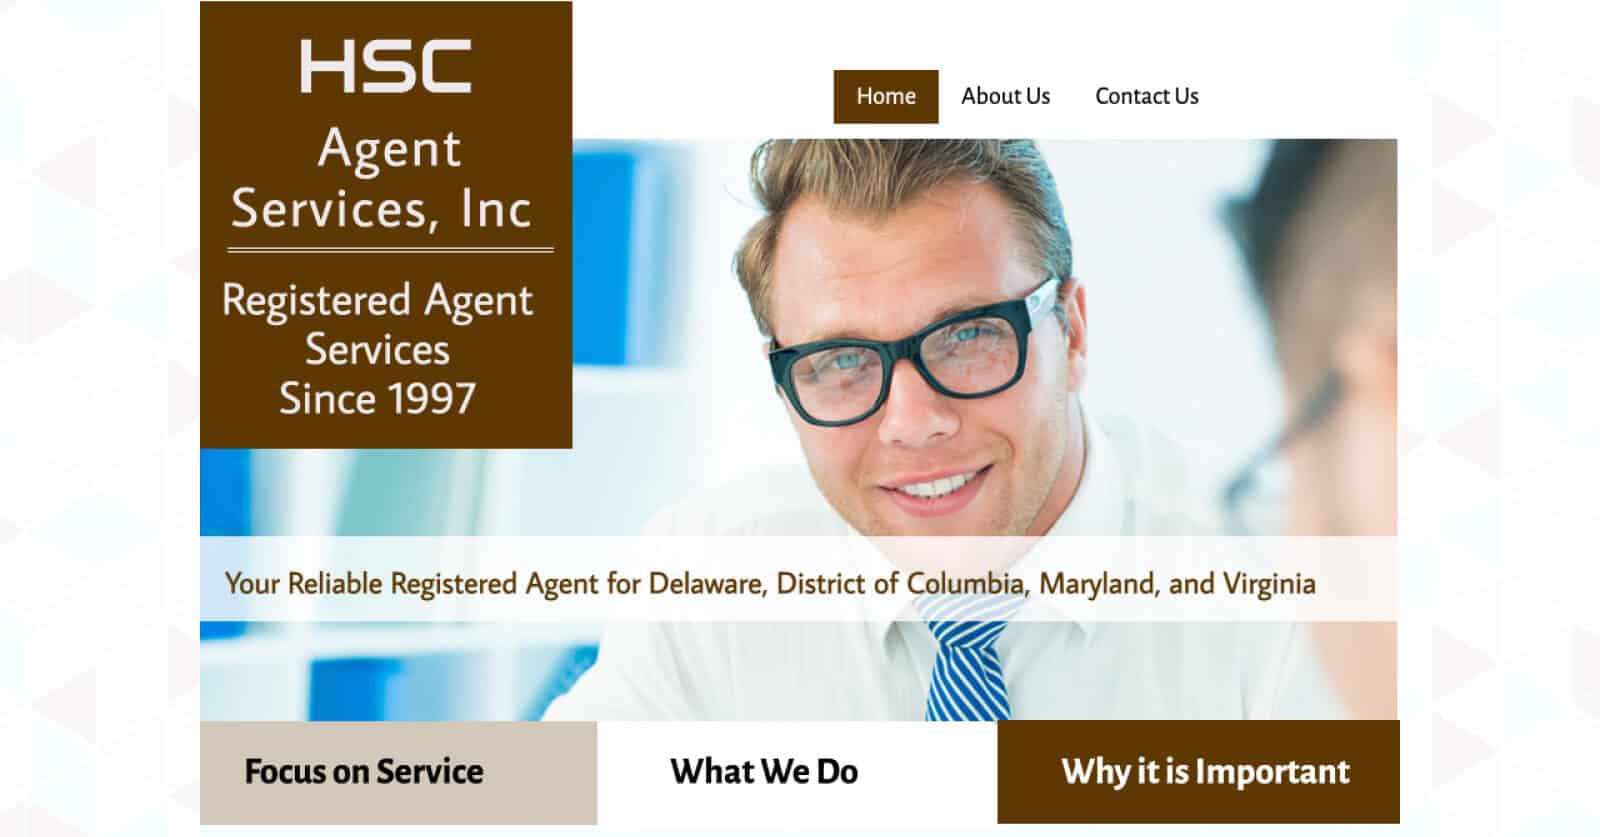 HSC Agent Services, Inc